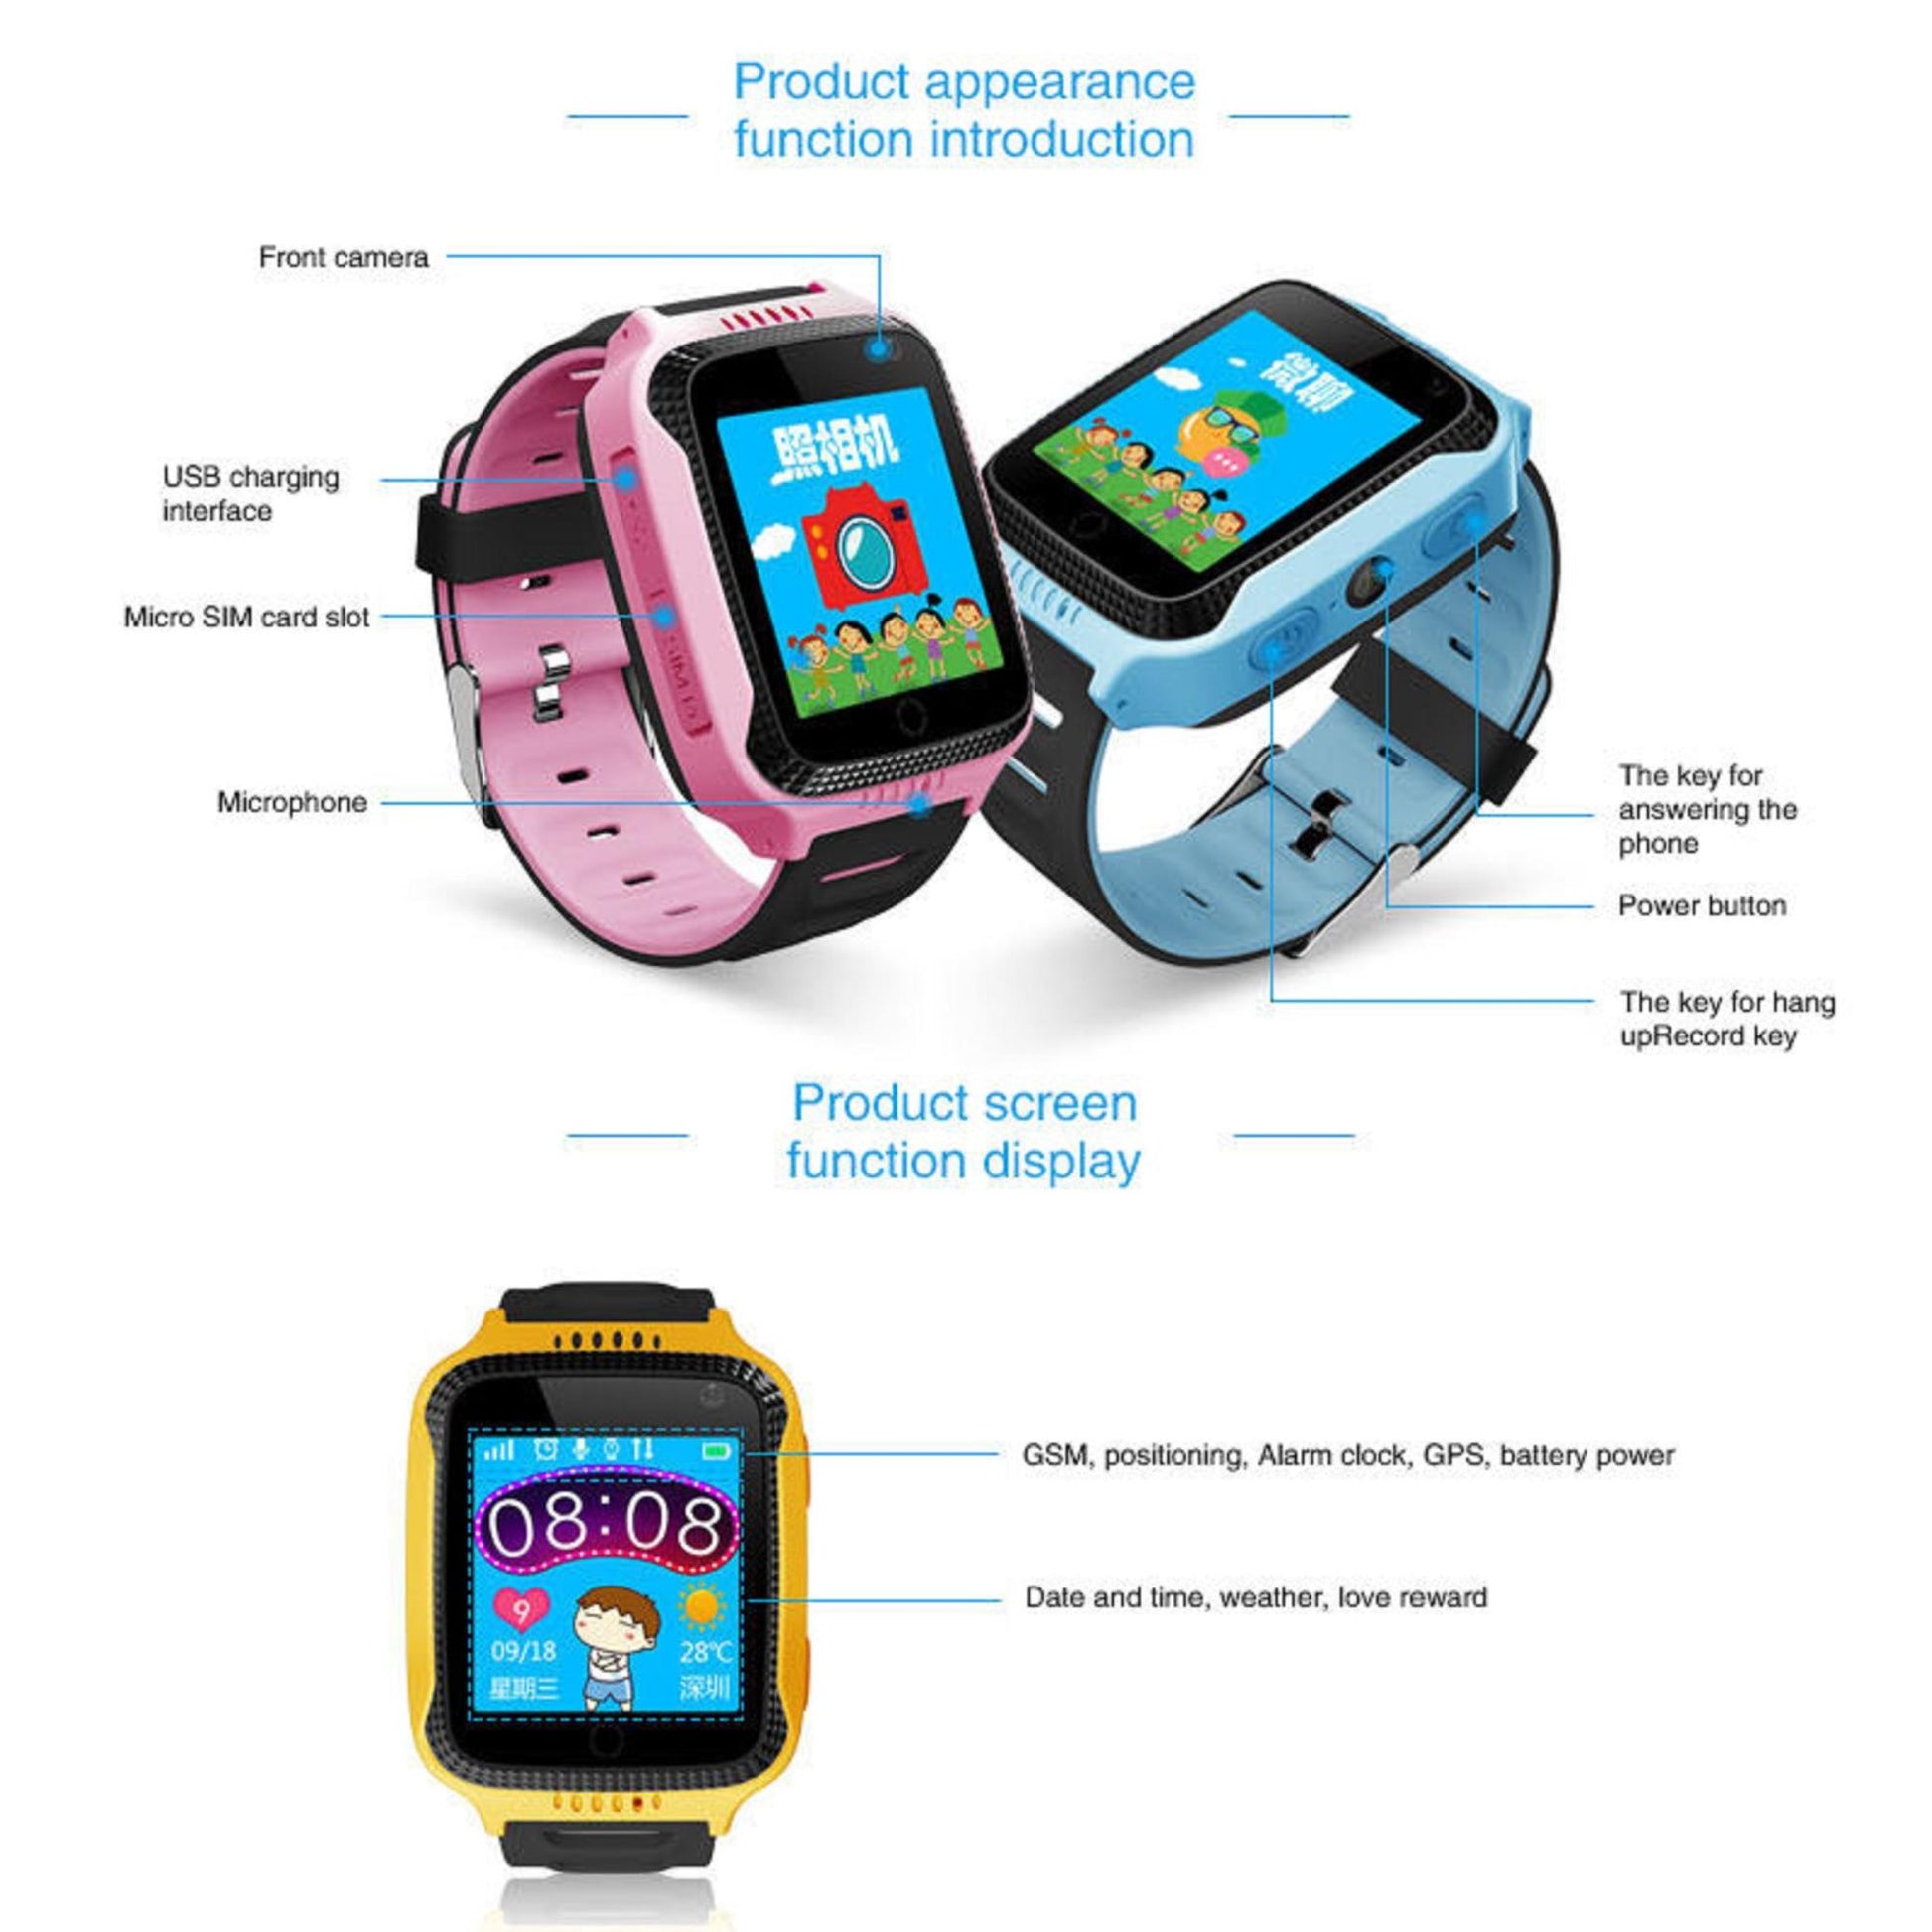 Kinder-Smartwatch mit GPS - Karen M G900A, 1,44-Zoll-Bildschirm, integrierte Kamera, langlebiger Akku. | Blue Chilli Electronics.